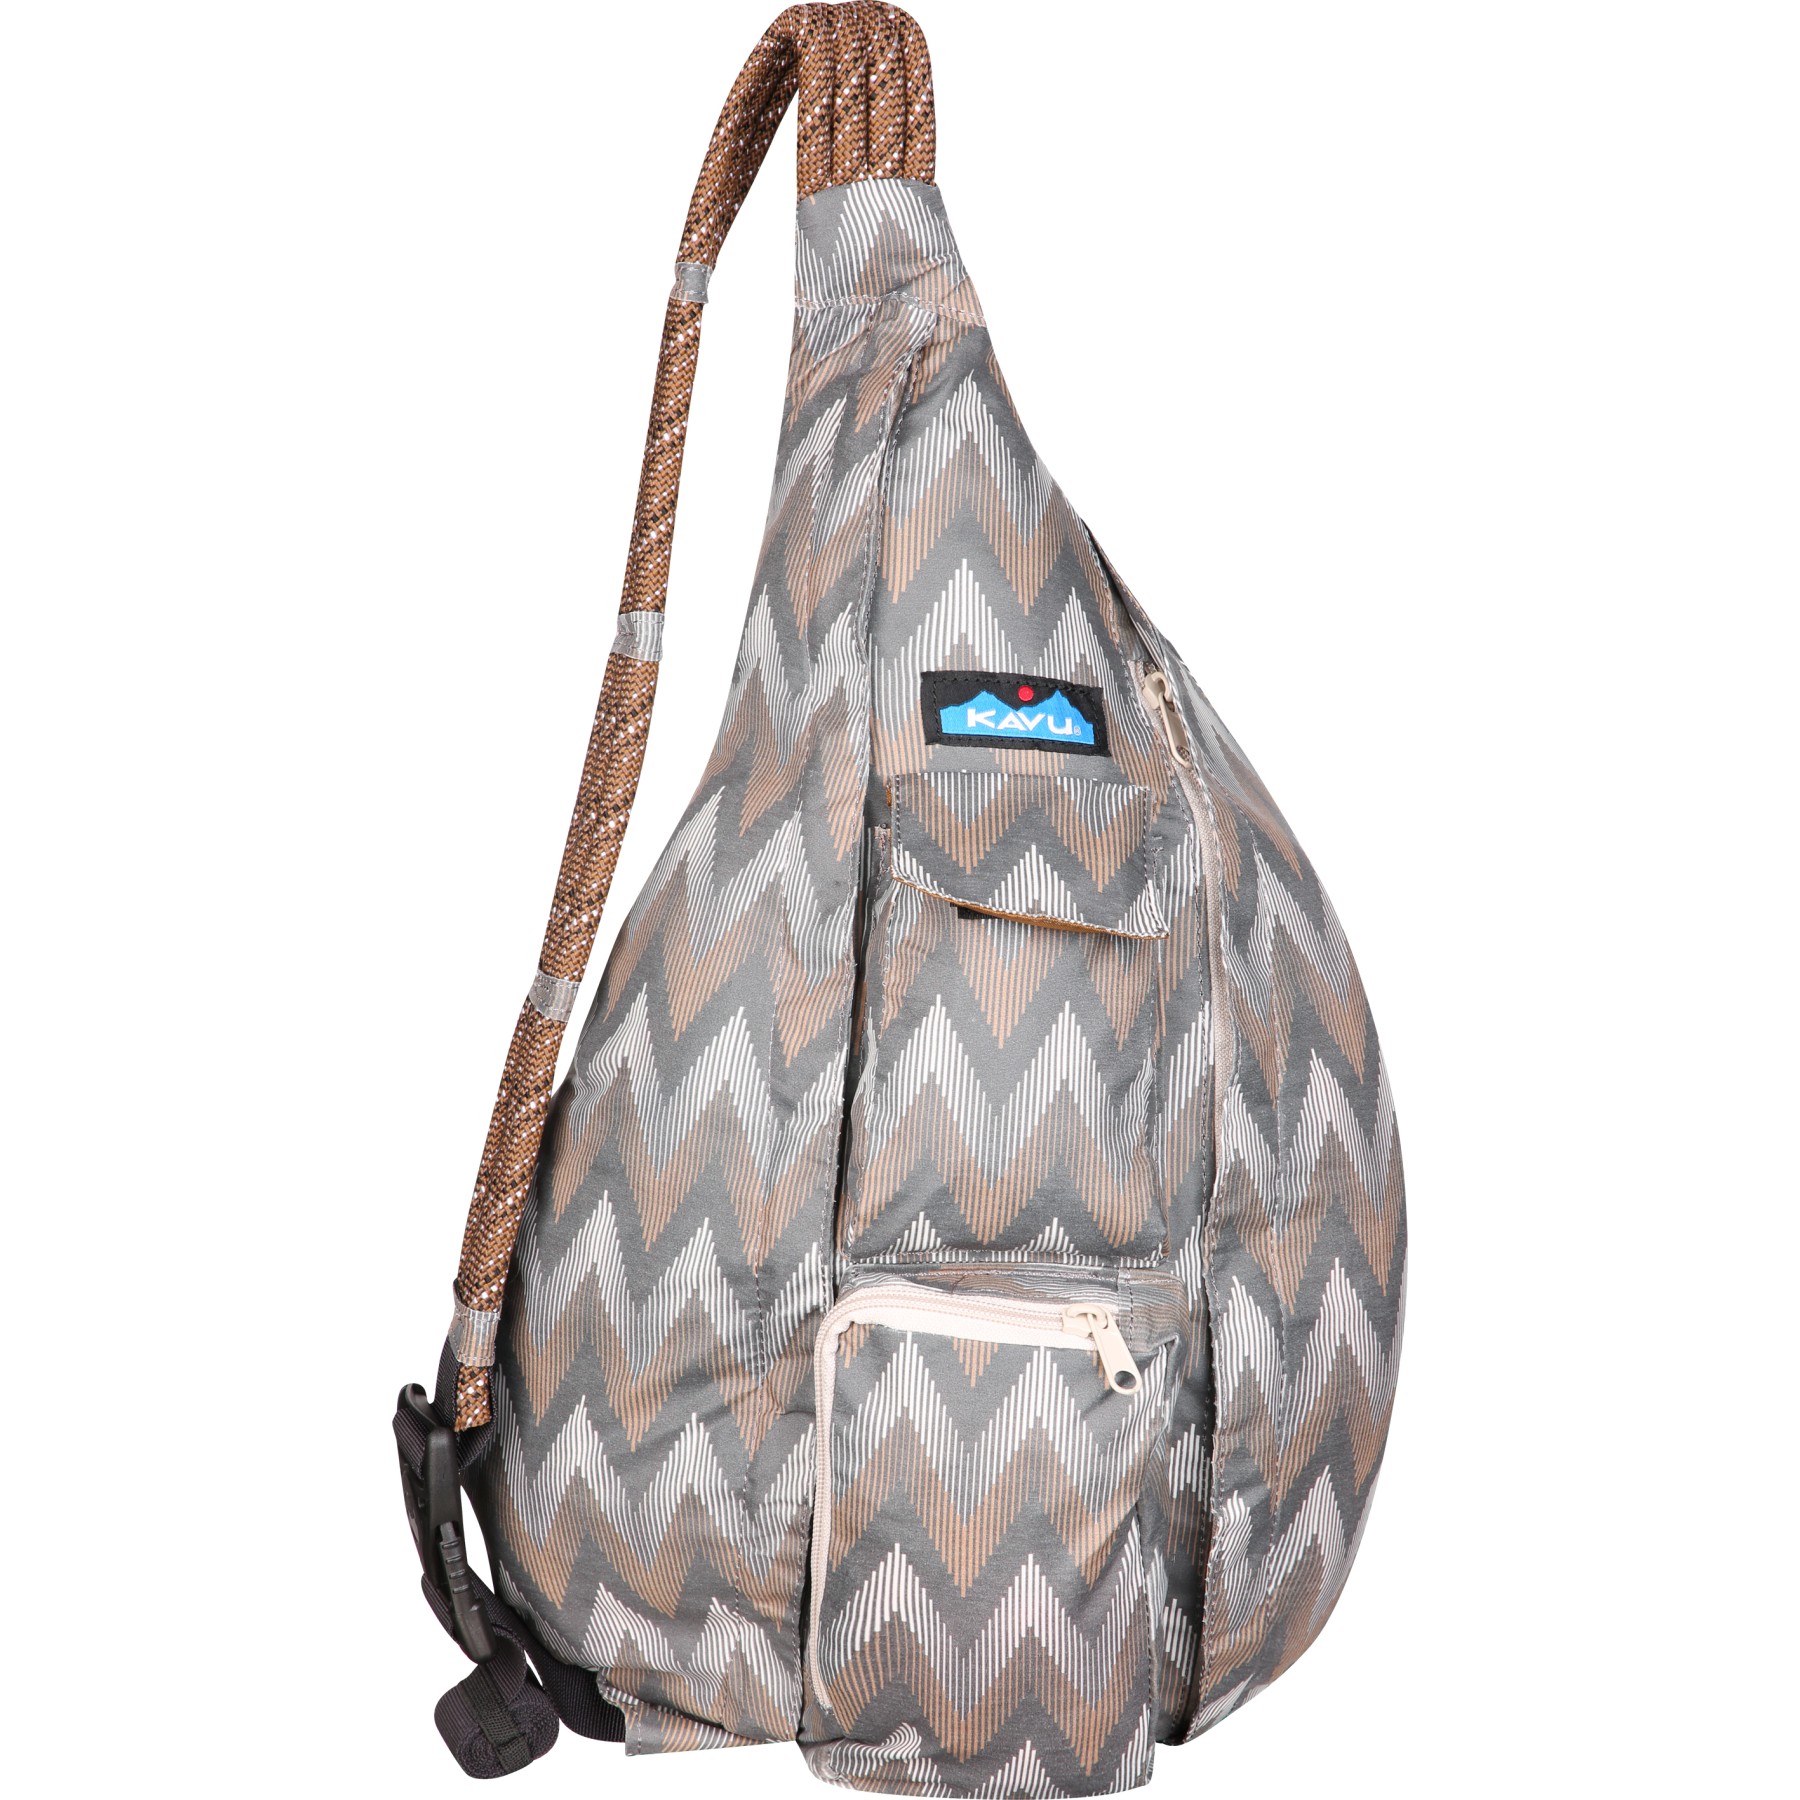 Produktbild von KAVU Rope Sack Tasche 10L - Chevron Peak